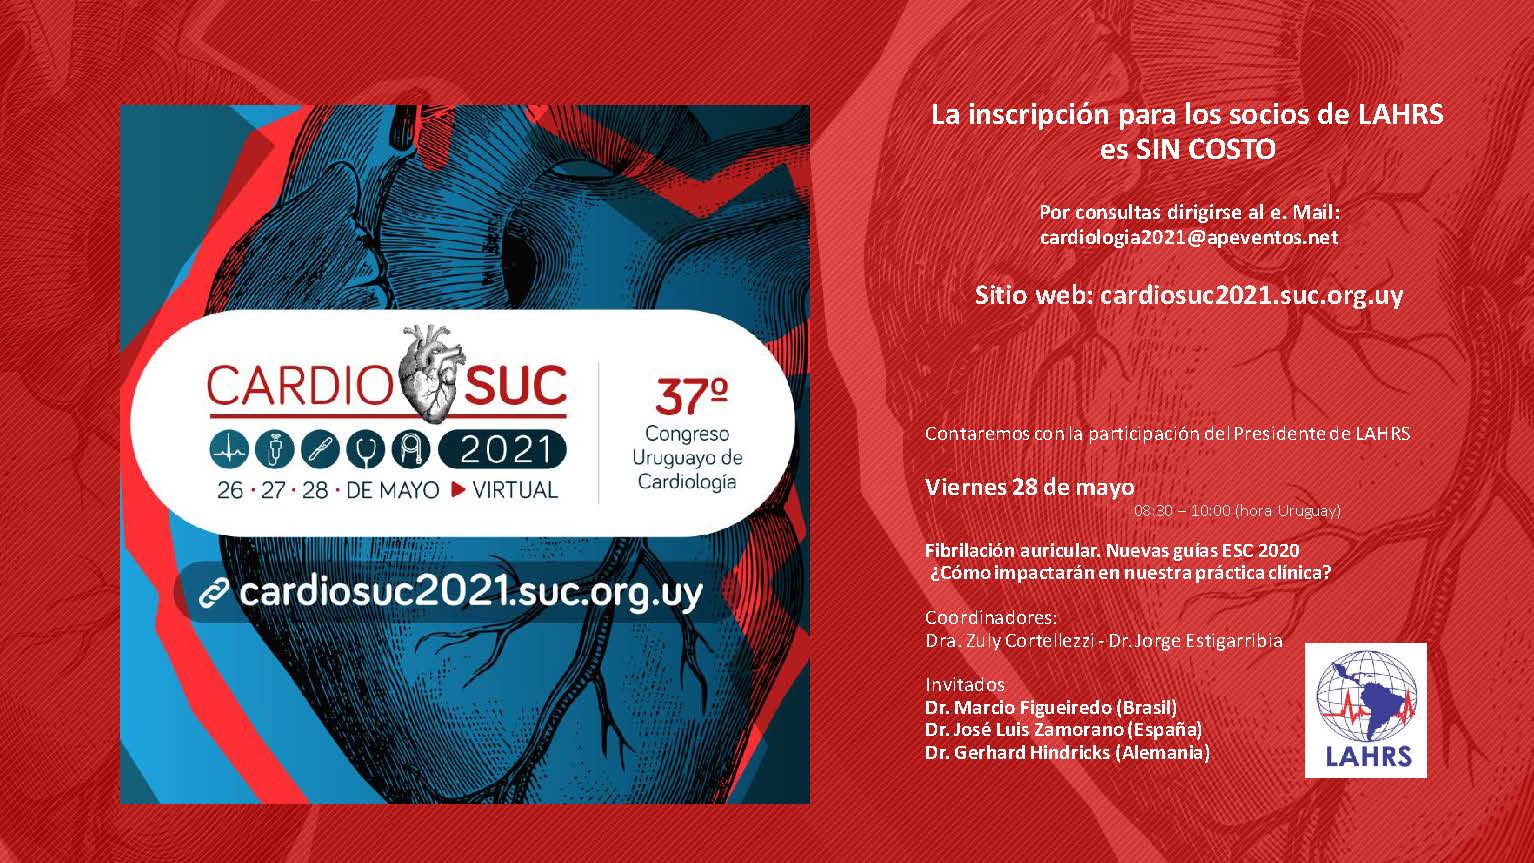 Cupos limitados: los miembros de LAHRS tienen inscripción gratuita en 37º Congreso Uruguayo de Cardiología